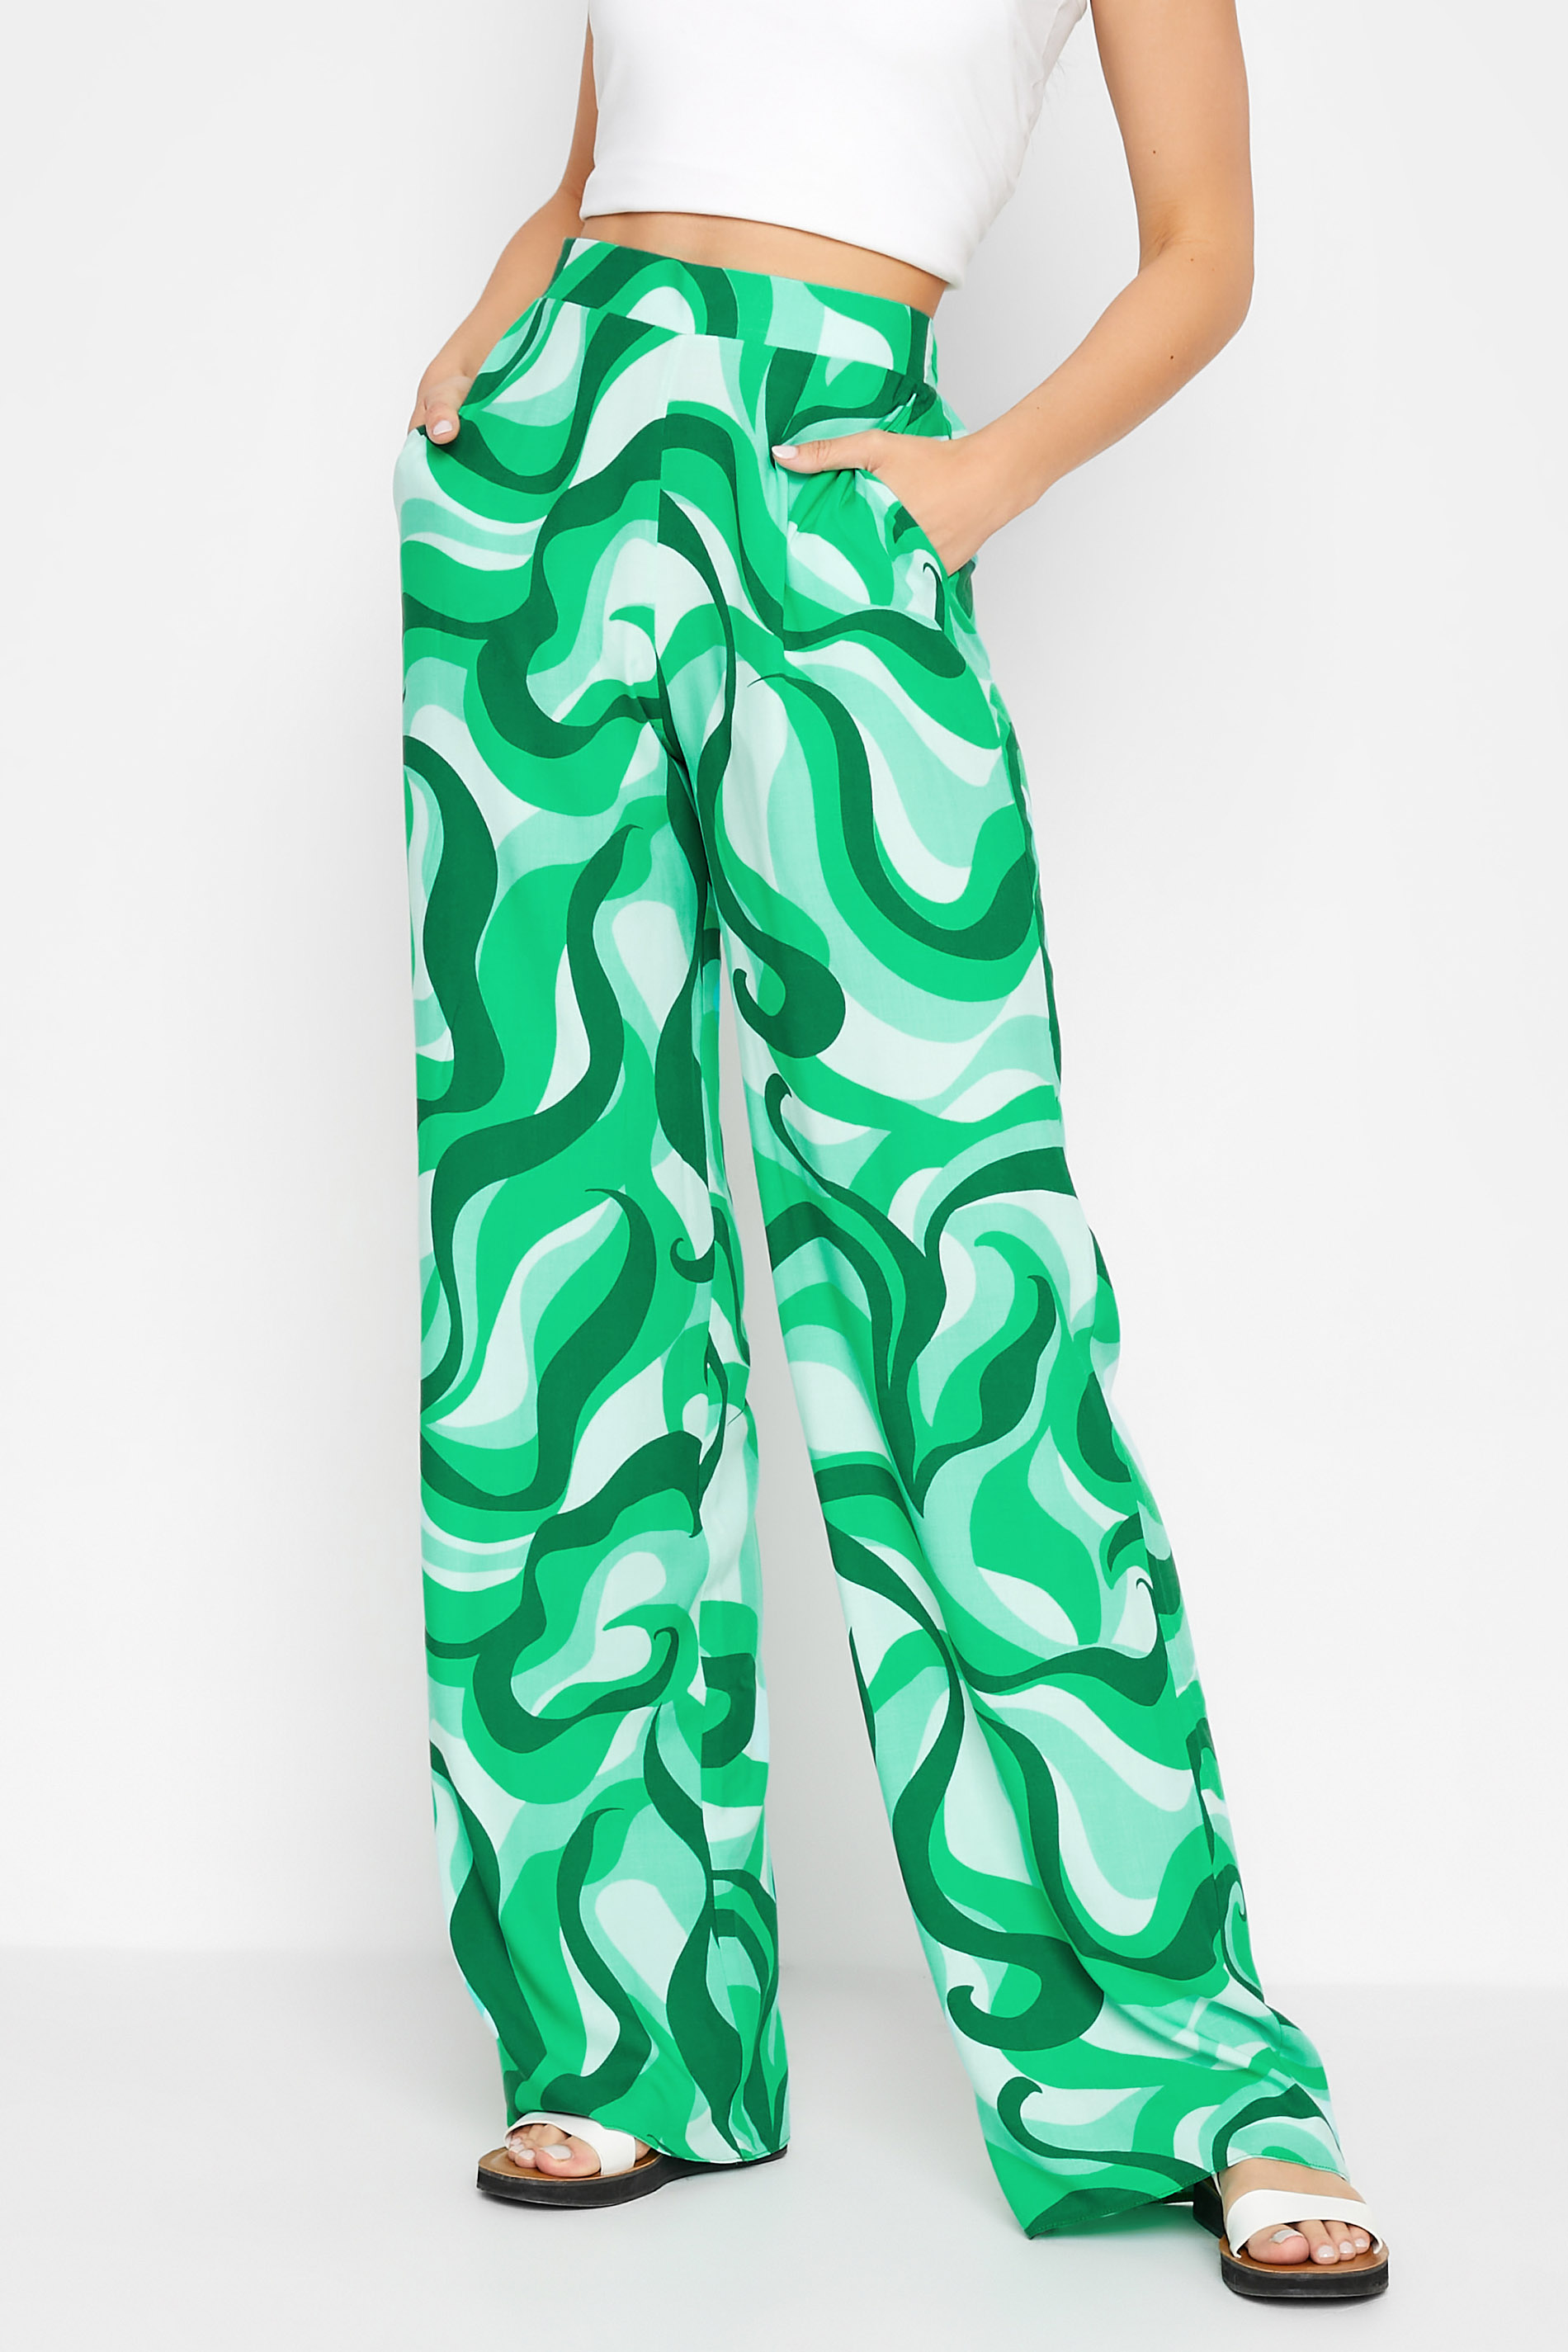 LTS Tall Bright Green Swirl Print Wide Leg Trousers_A.jpg